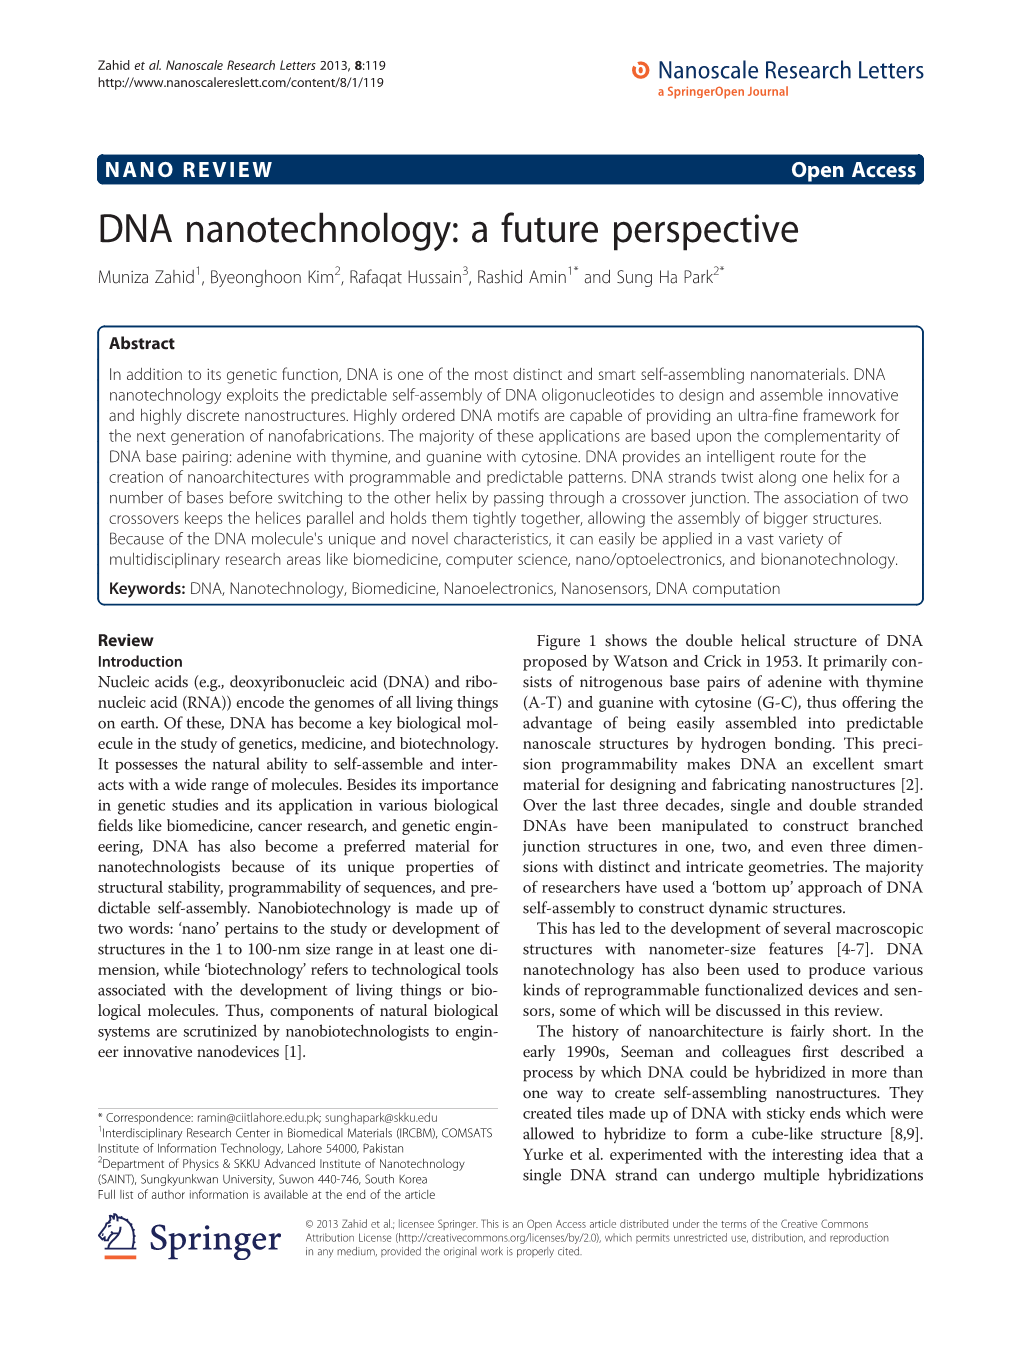 DNA Nanotechnology: a Future Perspective Muniza Zahid1, Byeonghoon Kim2, Rafaqat Hussain3, Rashid Amin1* and Sung Ha Park2*